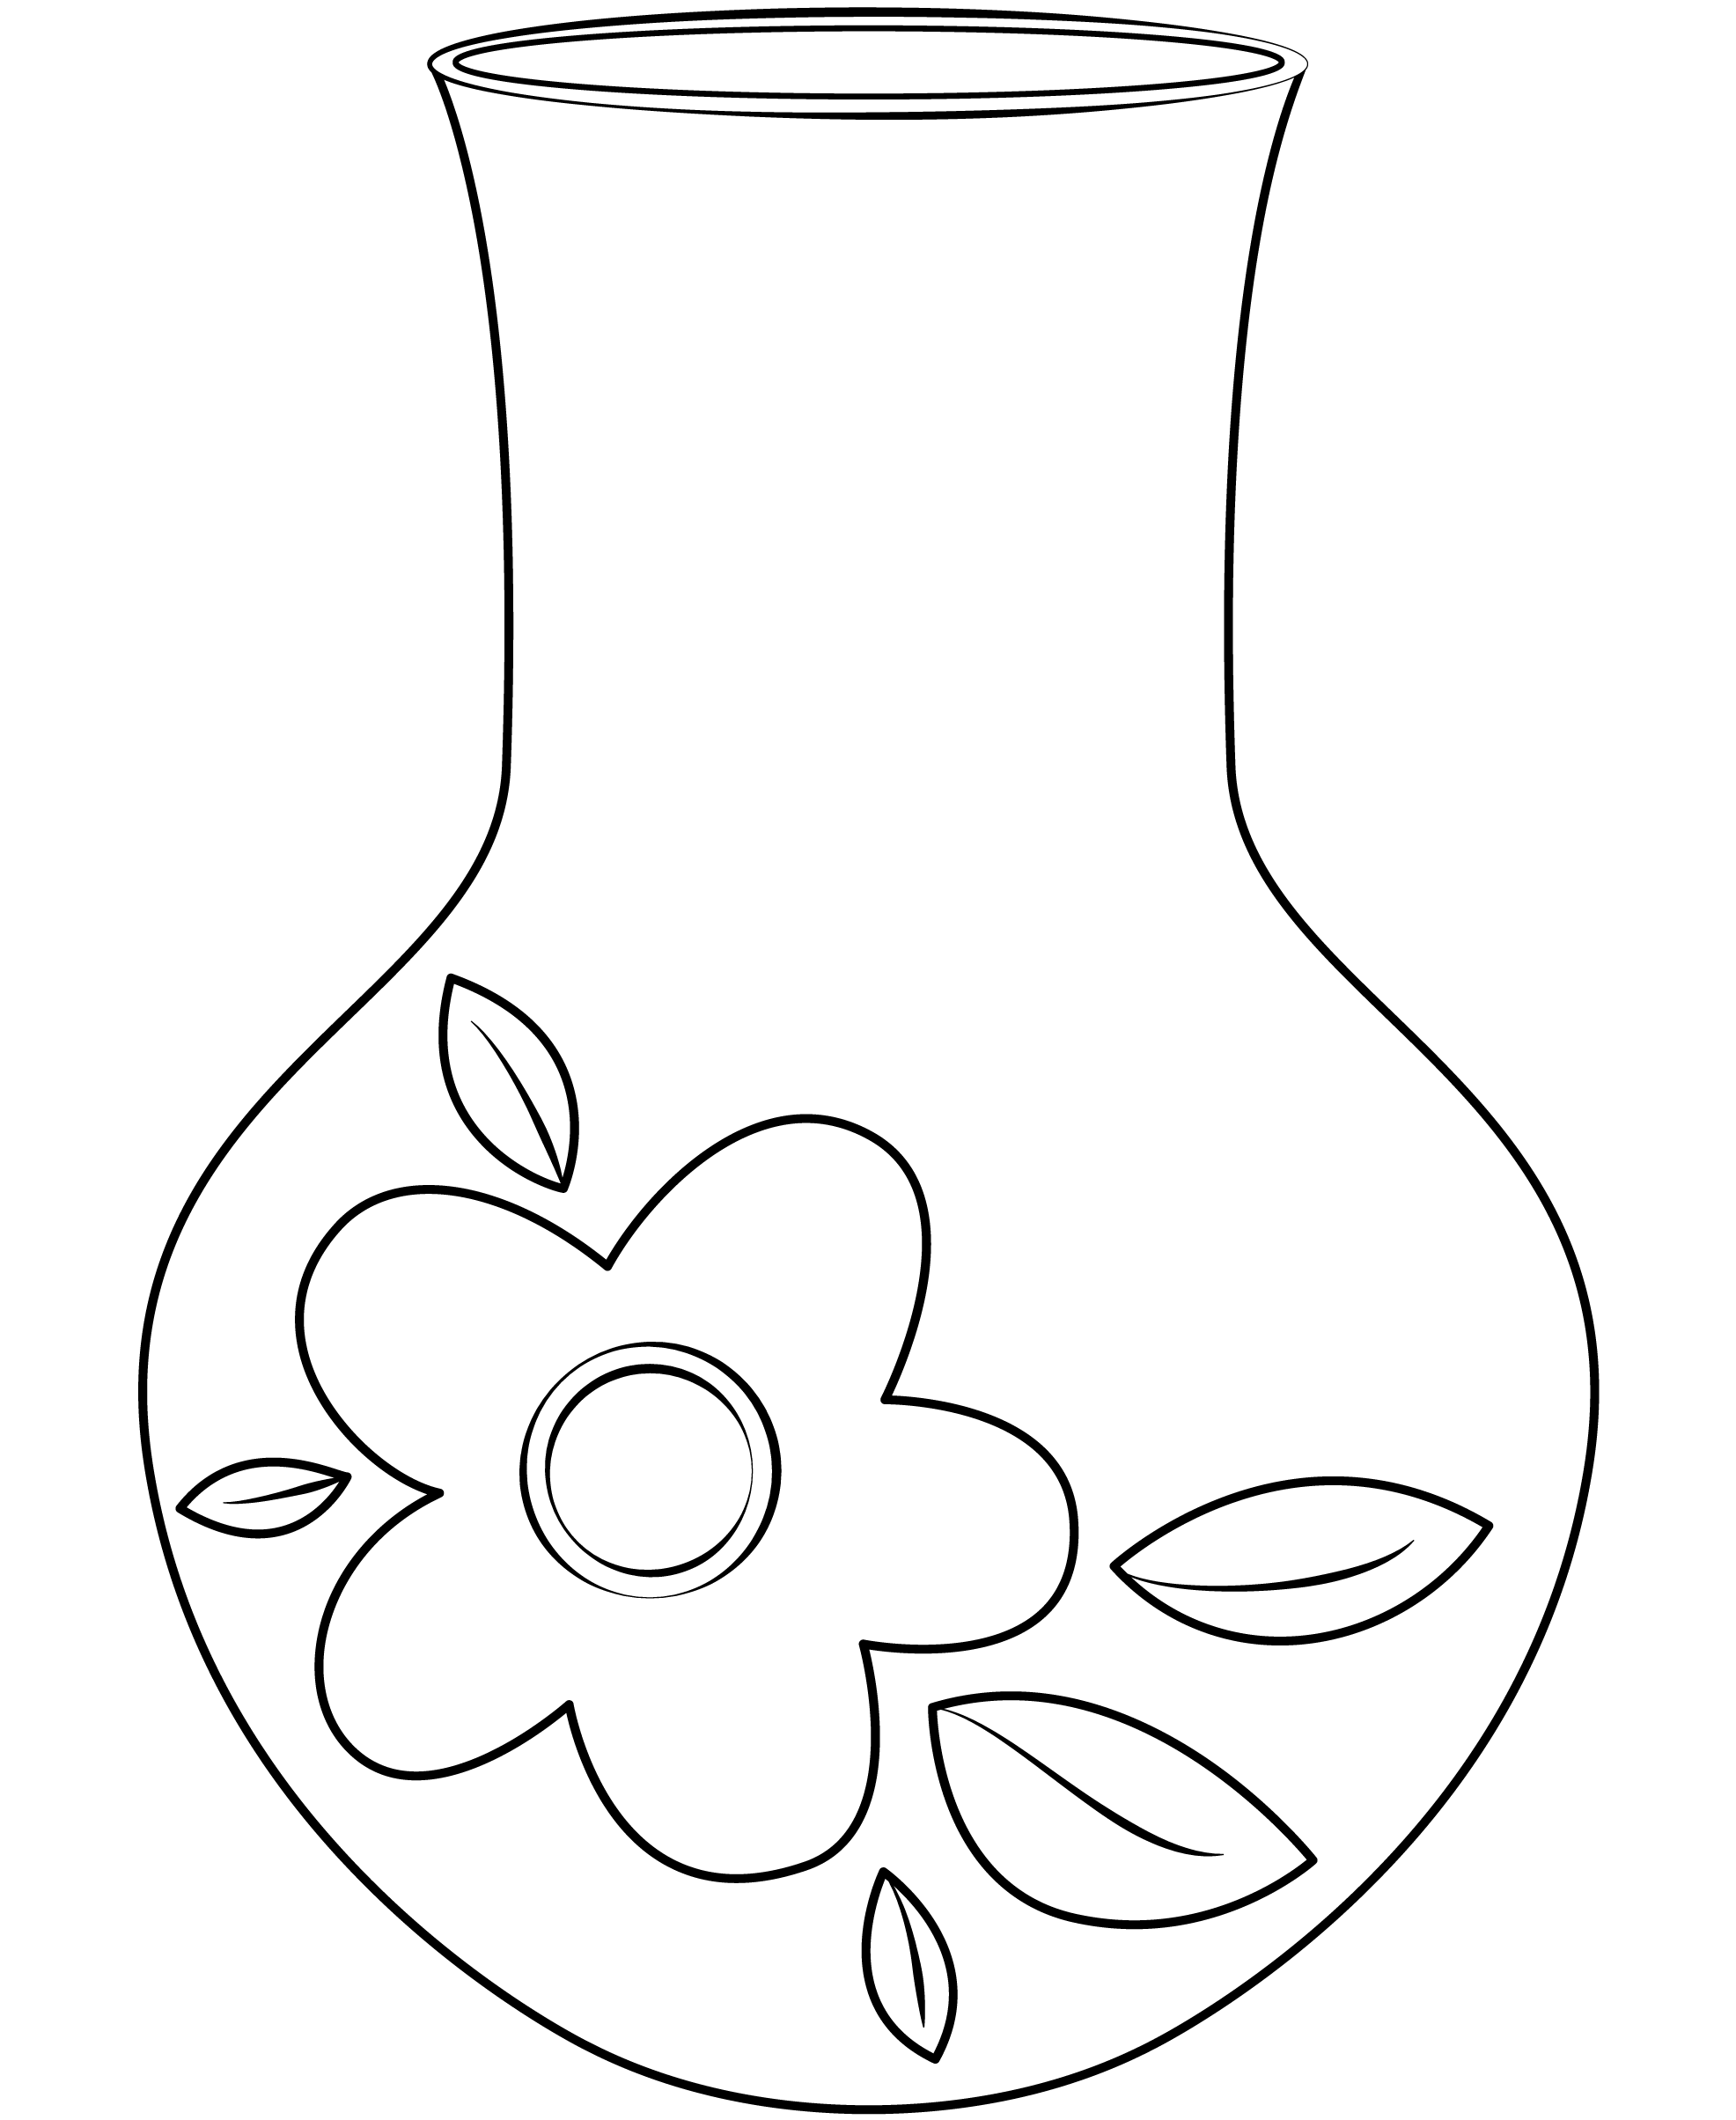 Трафарет плаcтиковый ЗХК 22*25 см растительный орнамент (элементы рисунка: цветы и волны)